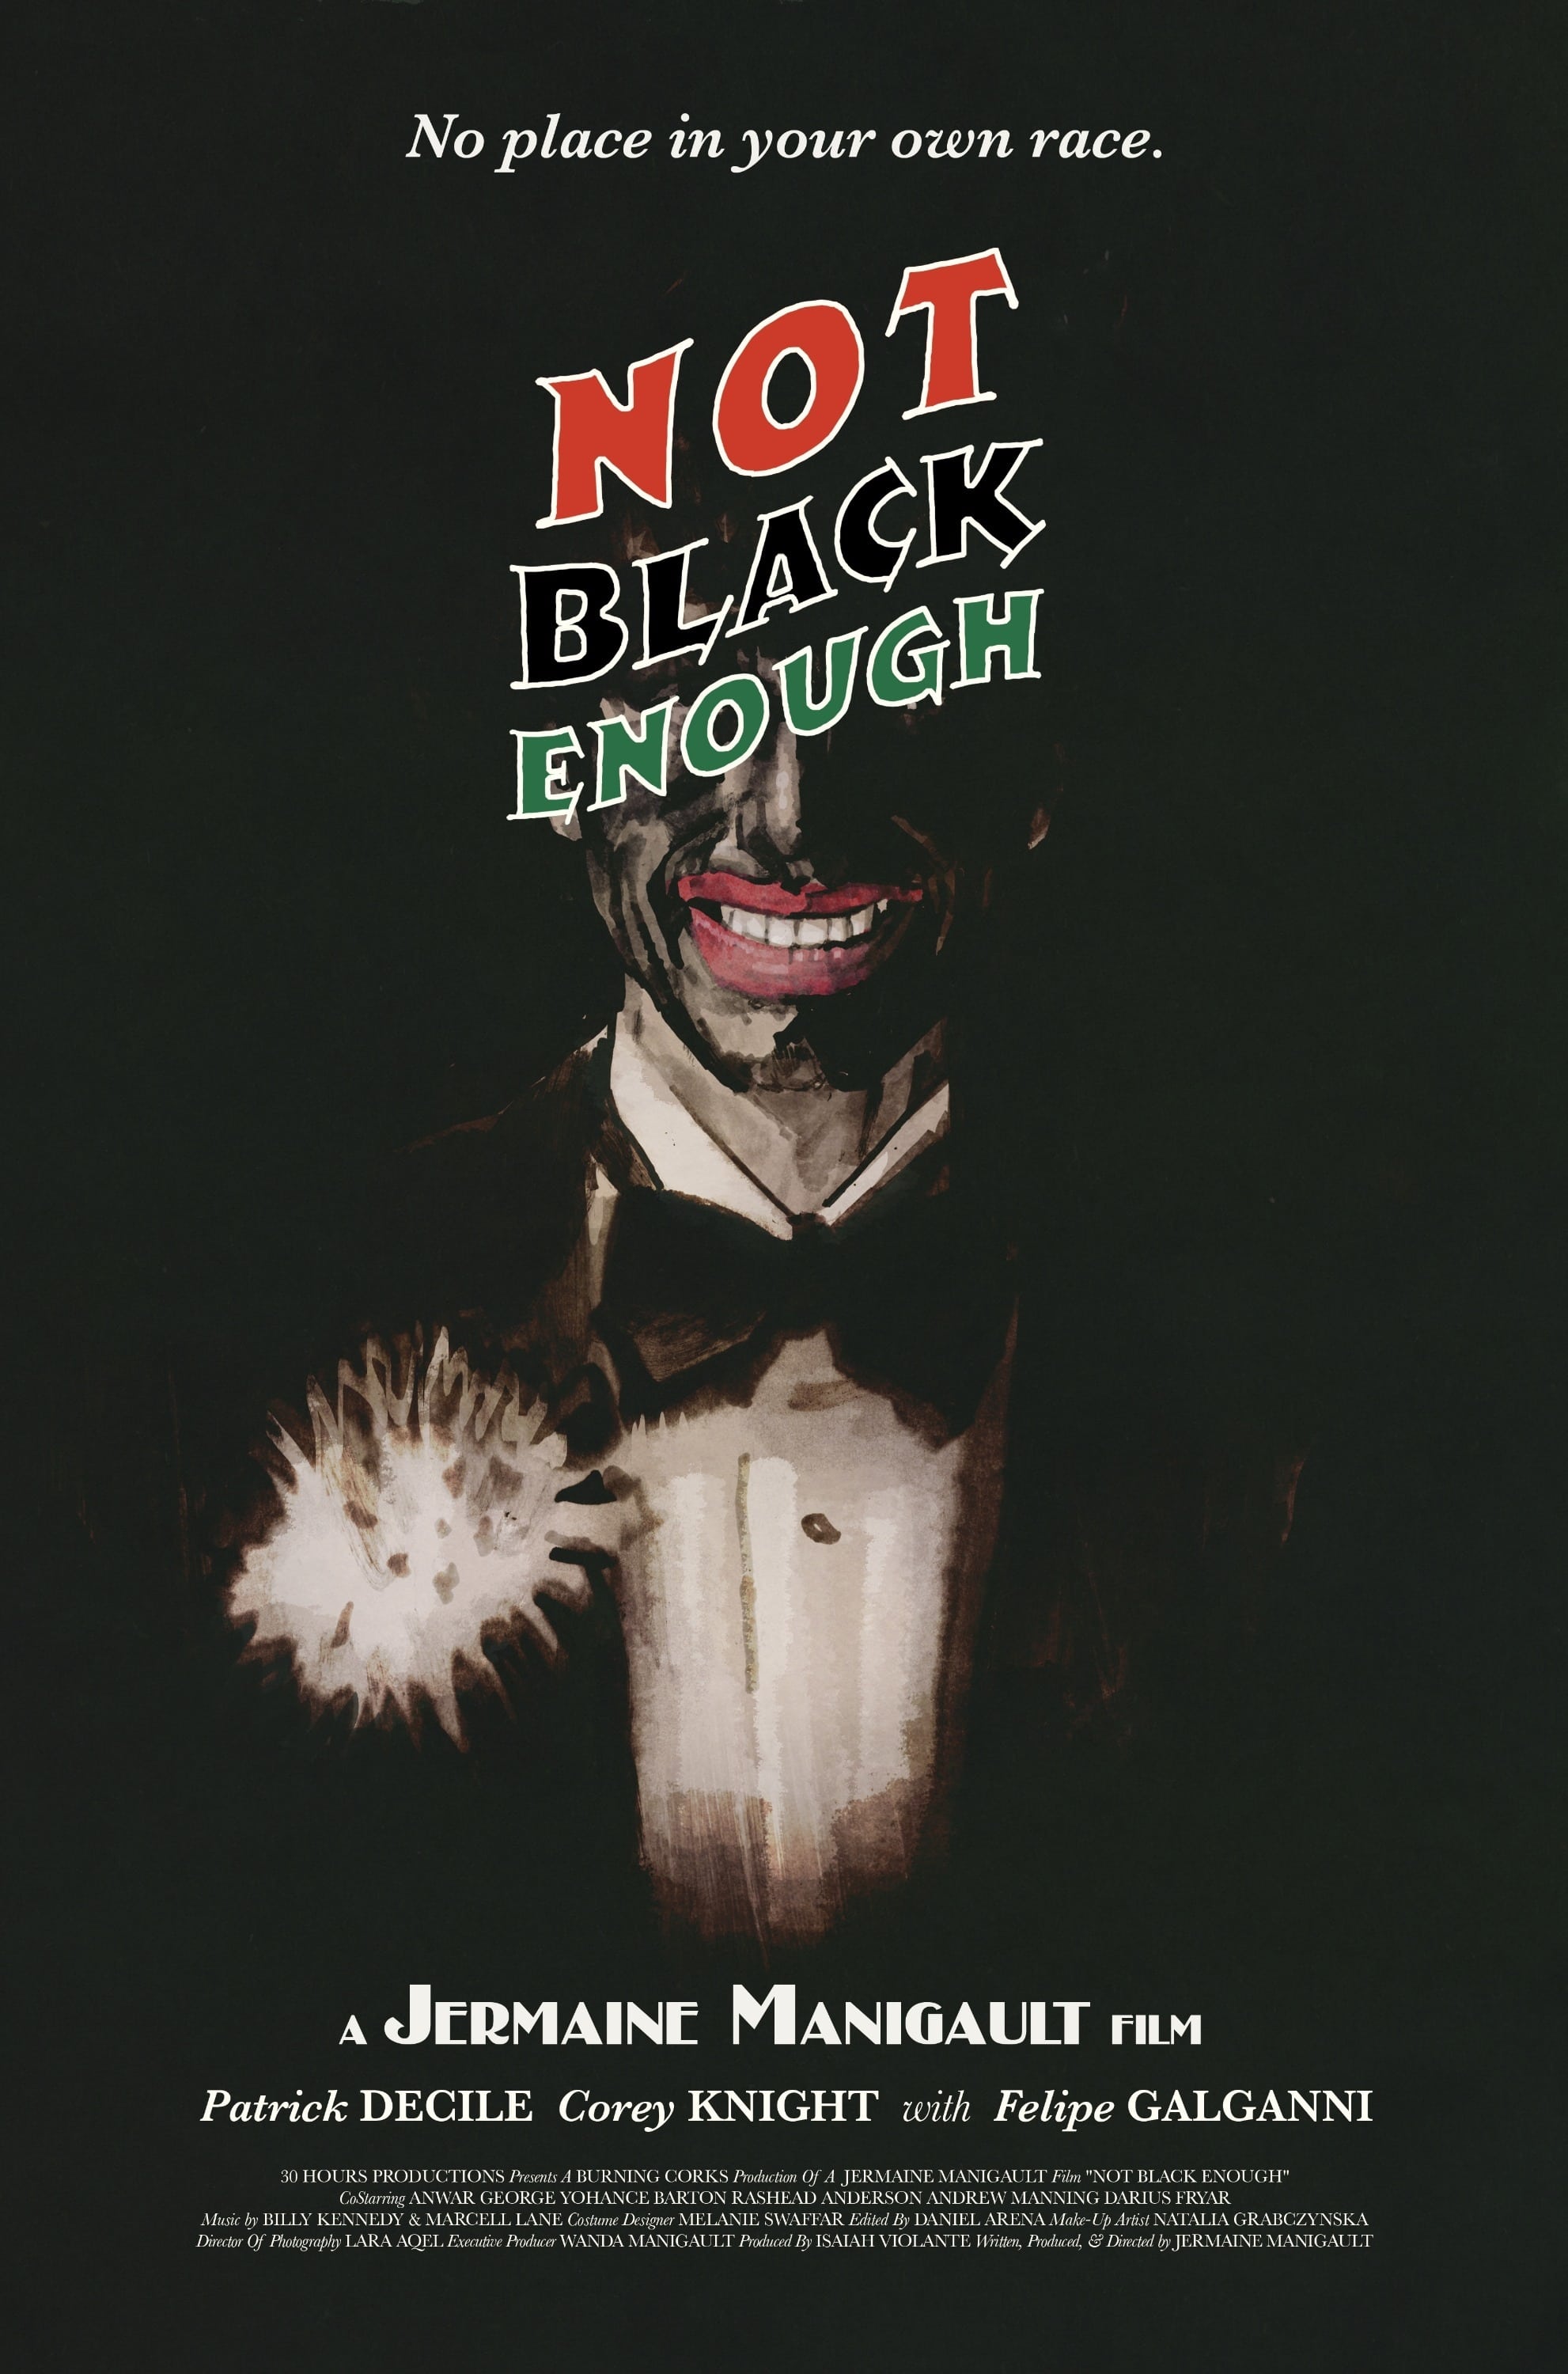 Not Black Enough